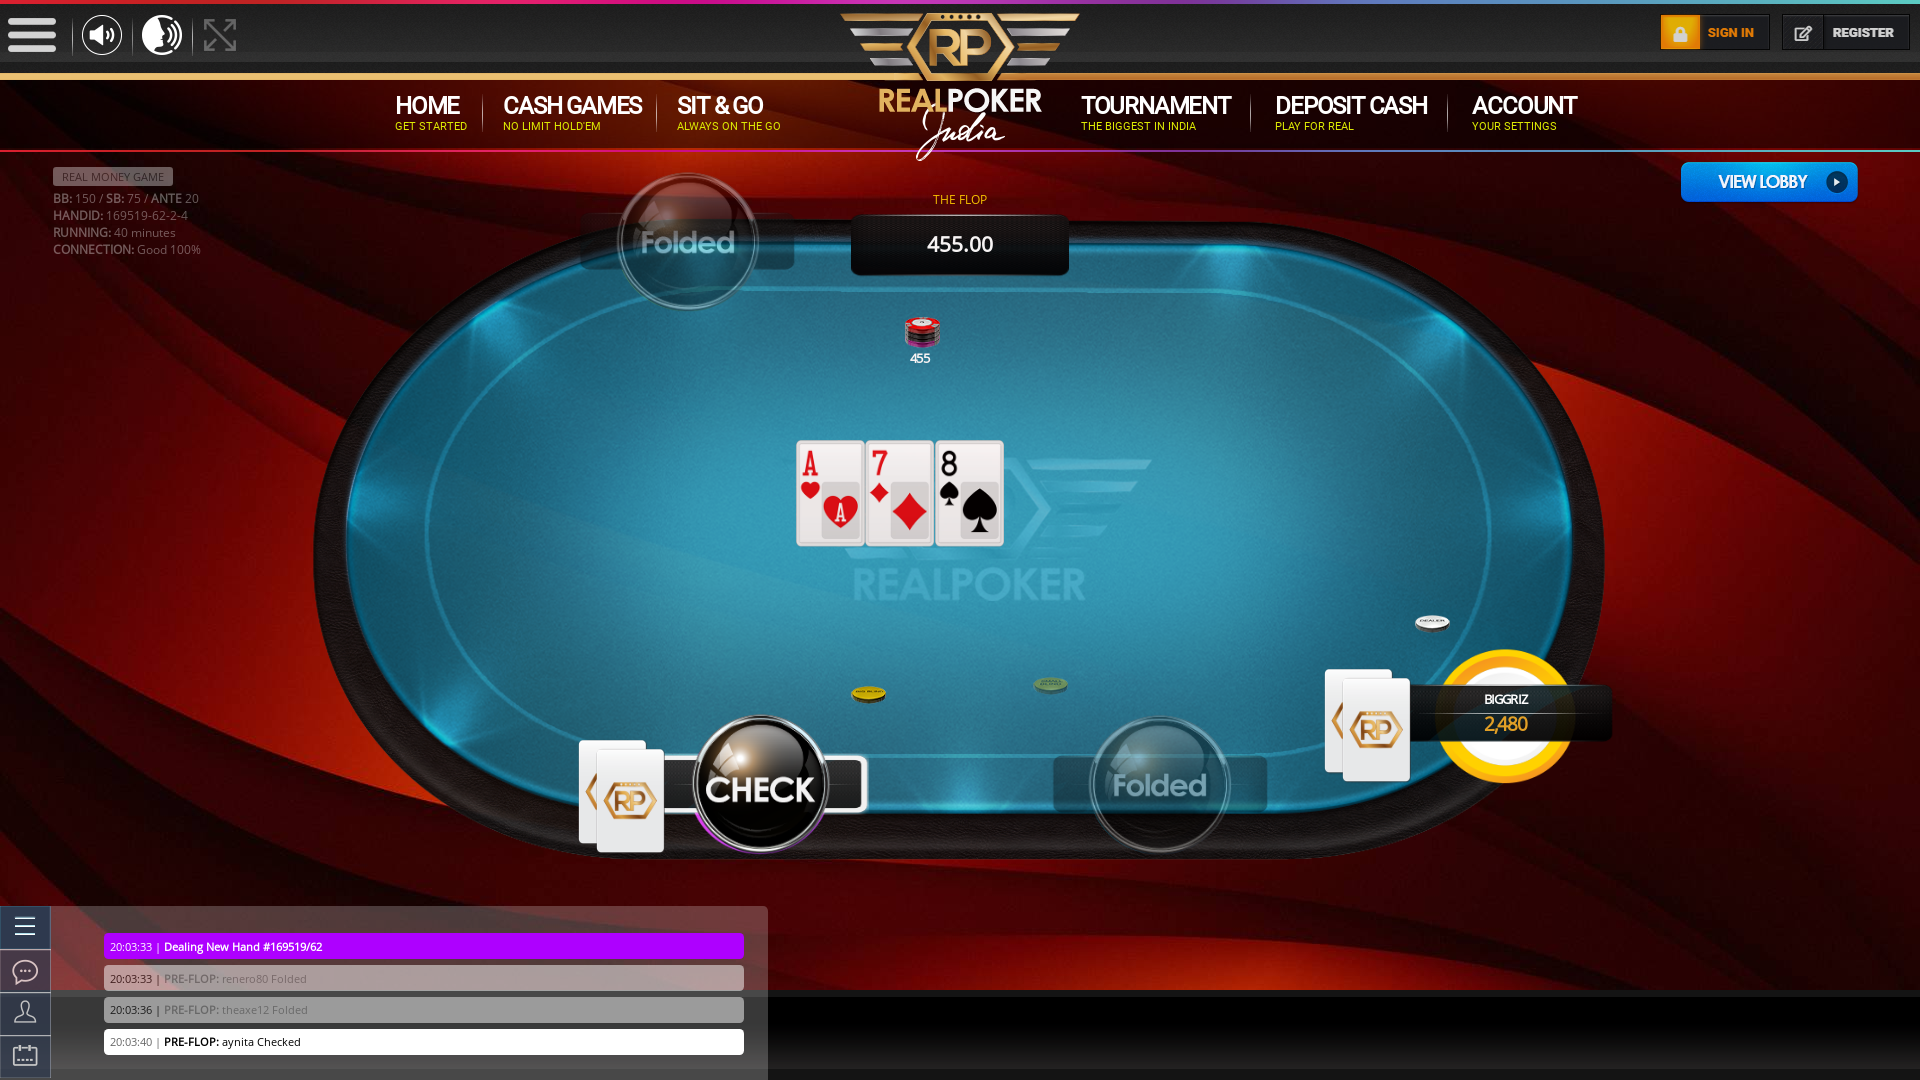 The 61st hand dealt between renero80, aynita, theaxe12, biggriz,  on poker india